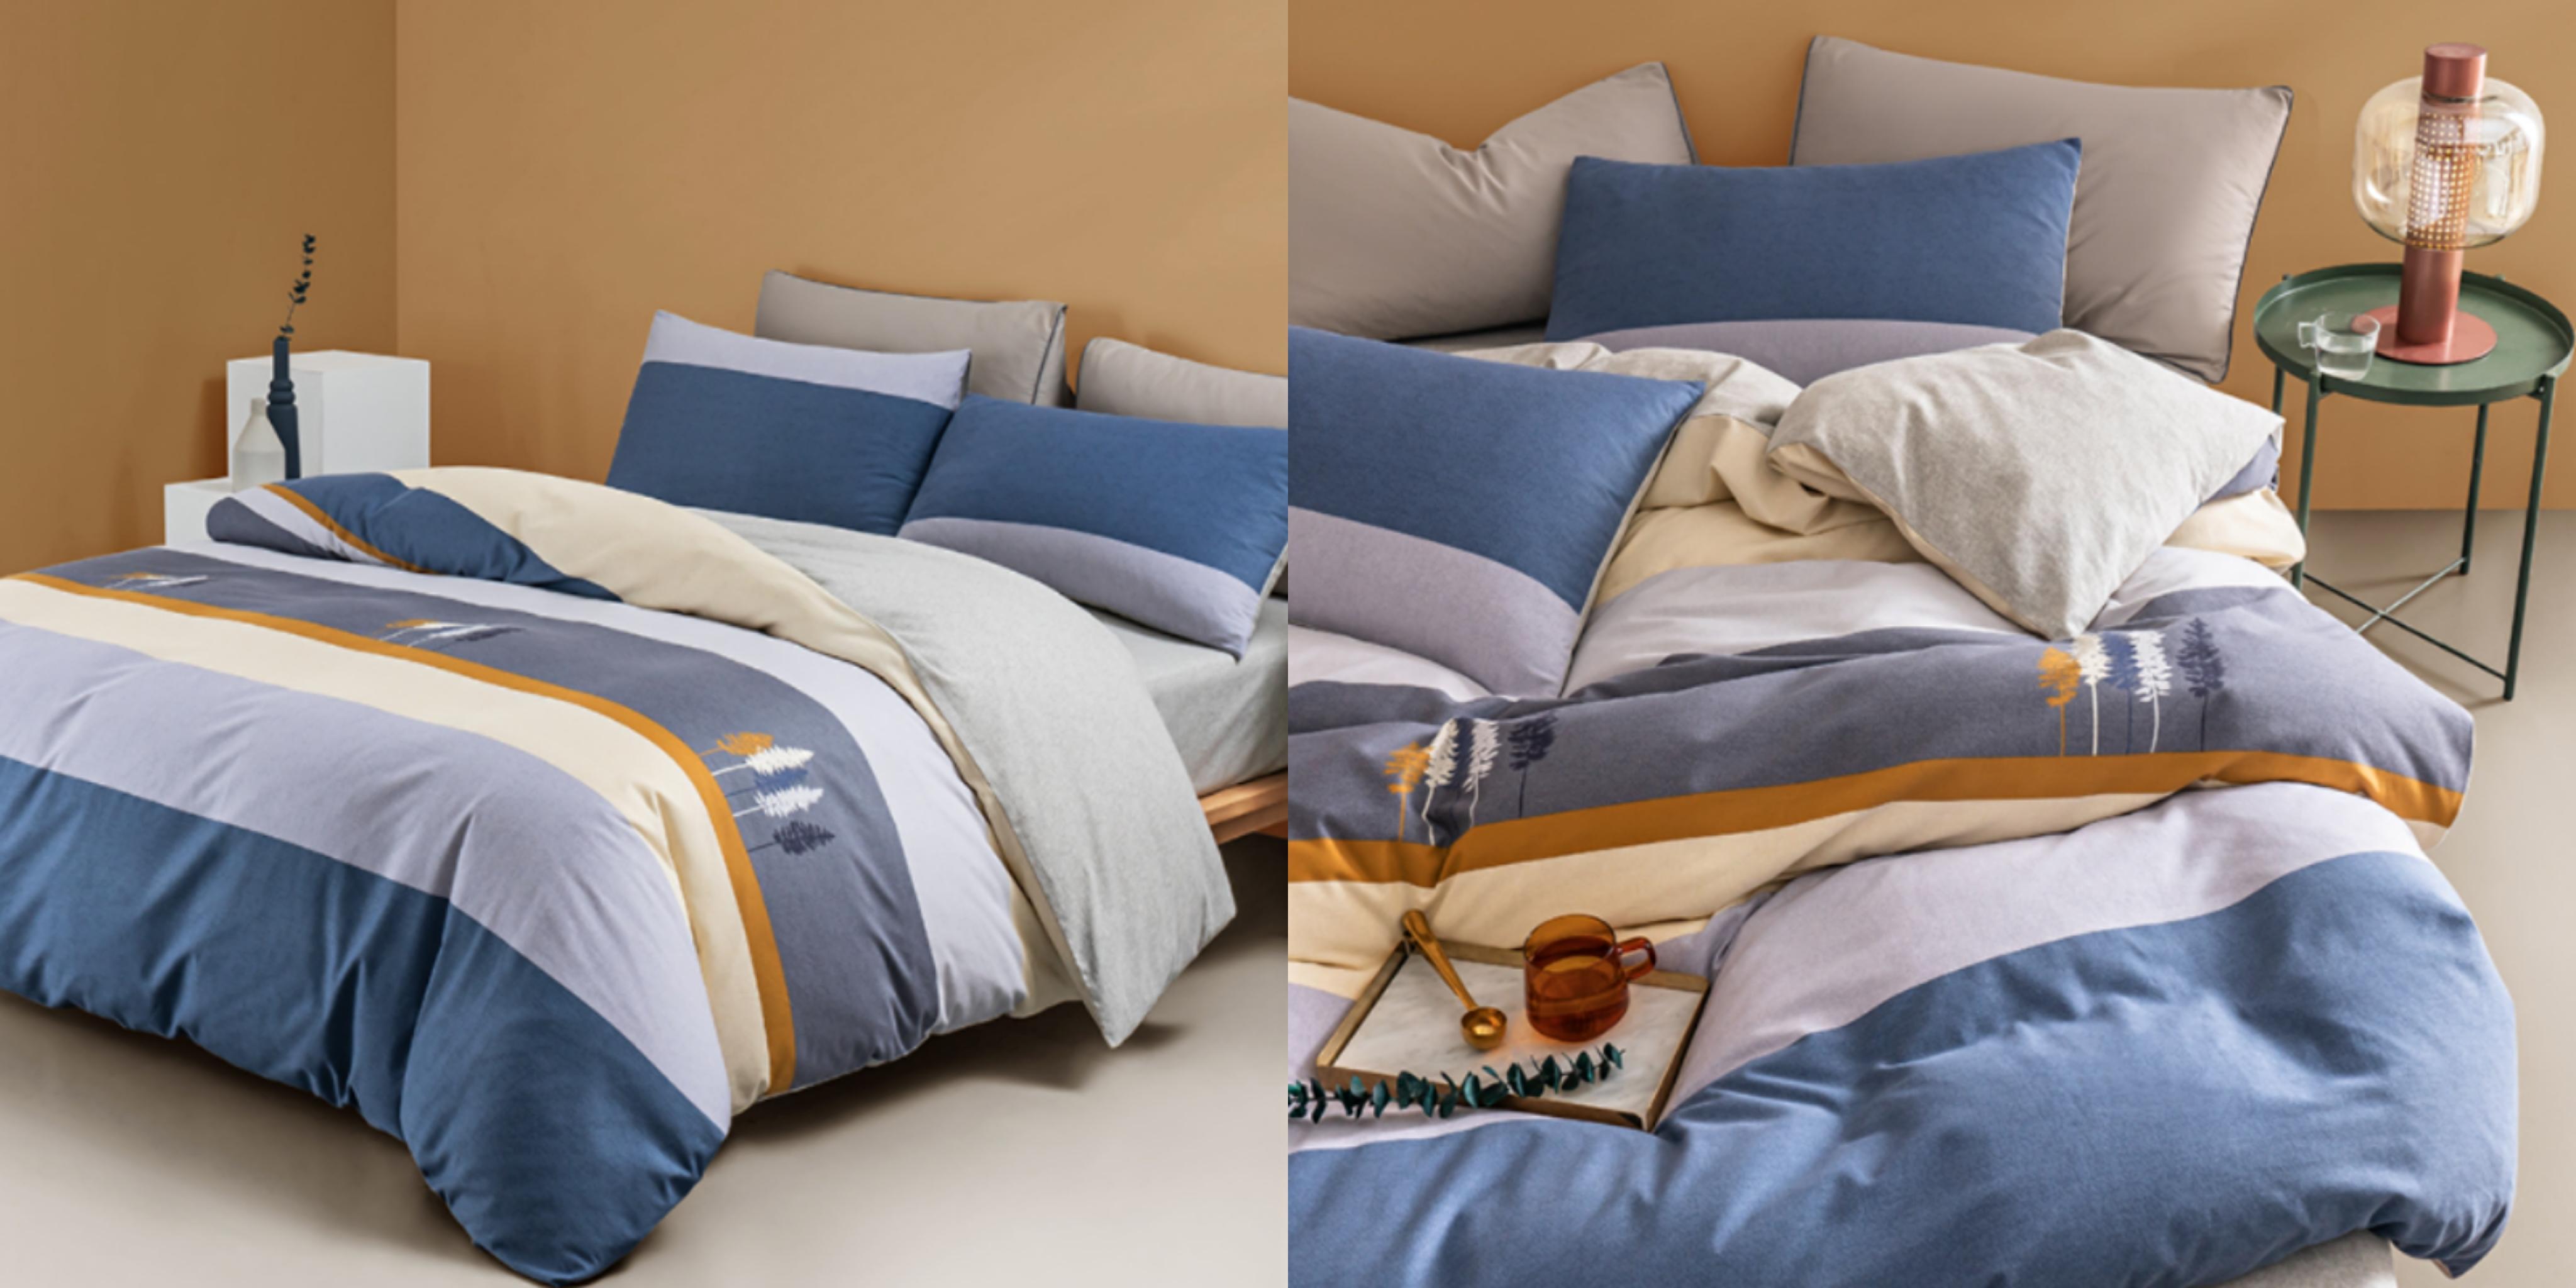 四件套床上用品品牌,四件套床上用品价格,床上用品四件套包括什么,四件套床上用品选购_齐家网